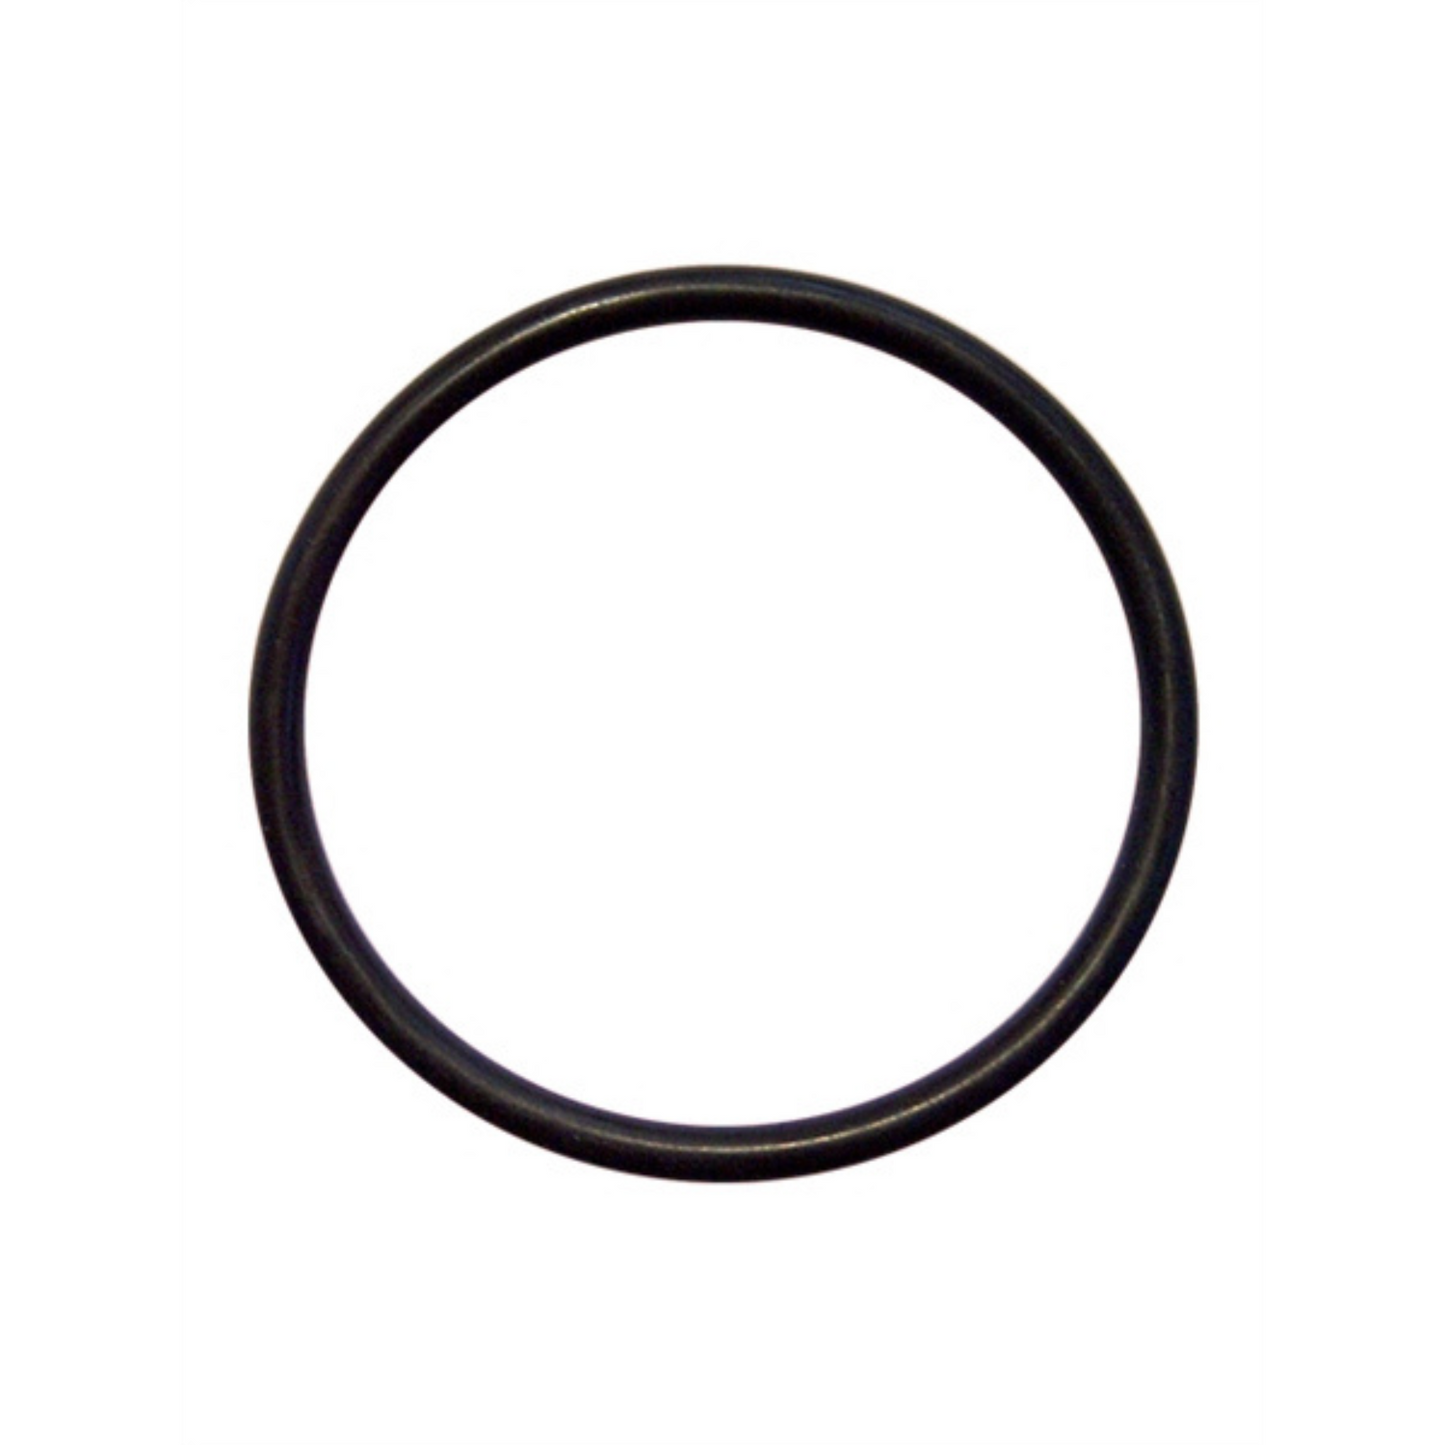 Deze dunne zwarte cock ring met een diameter van 55 mm, van Mister B en te koop bij Flavourez.